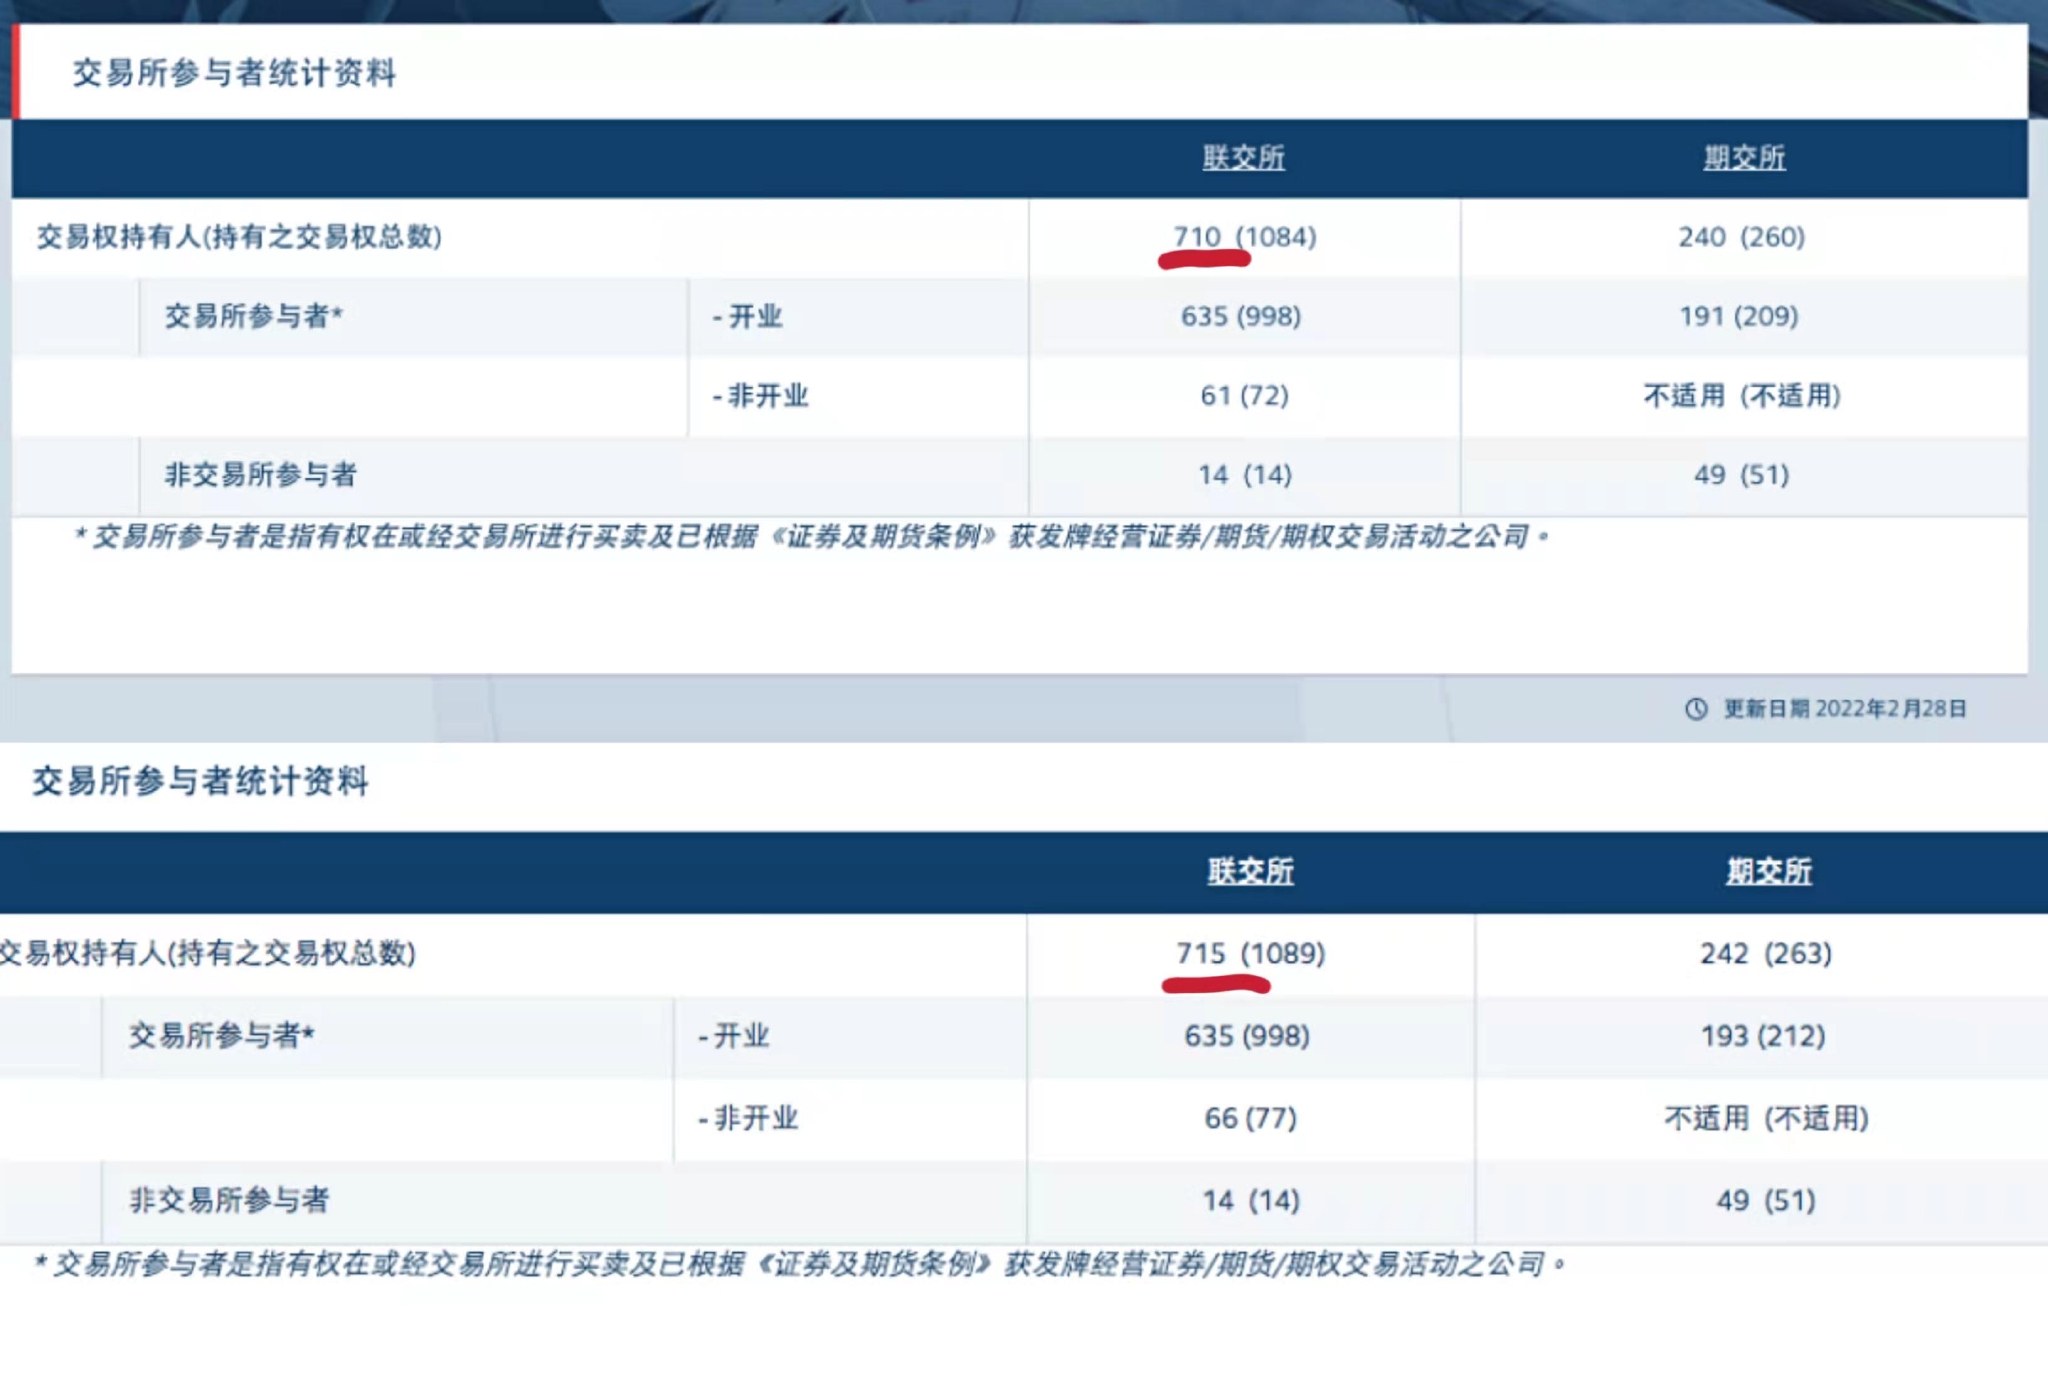 “近一个月5家券商、2家期货公司关门停业 香港券商急需完成线上化升级